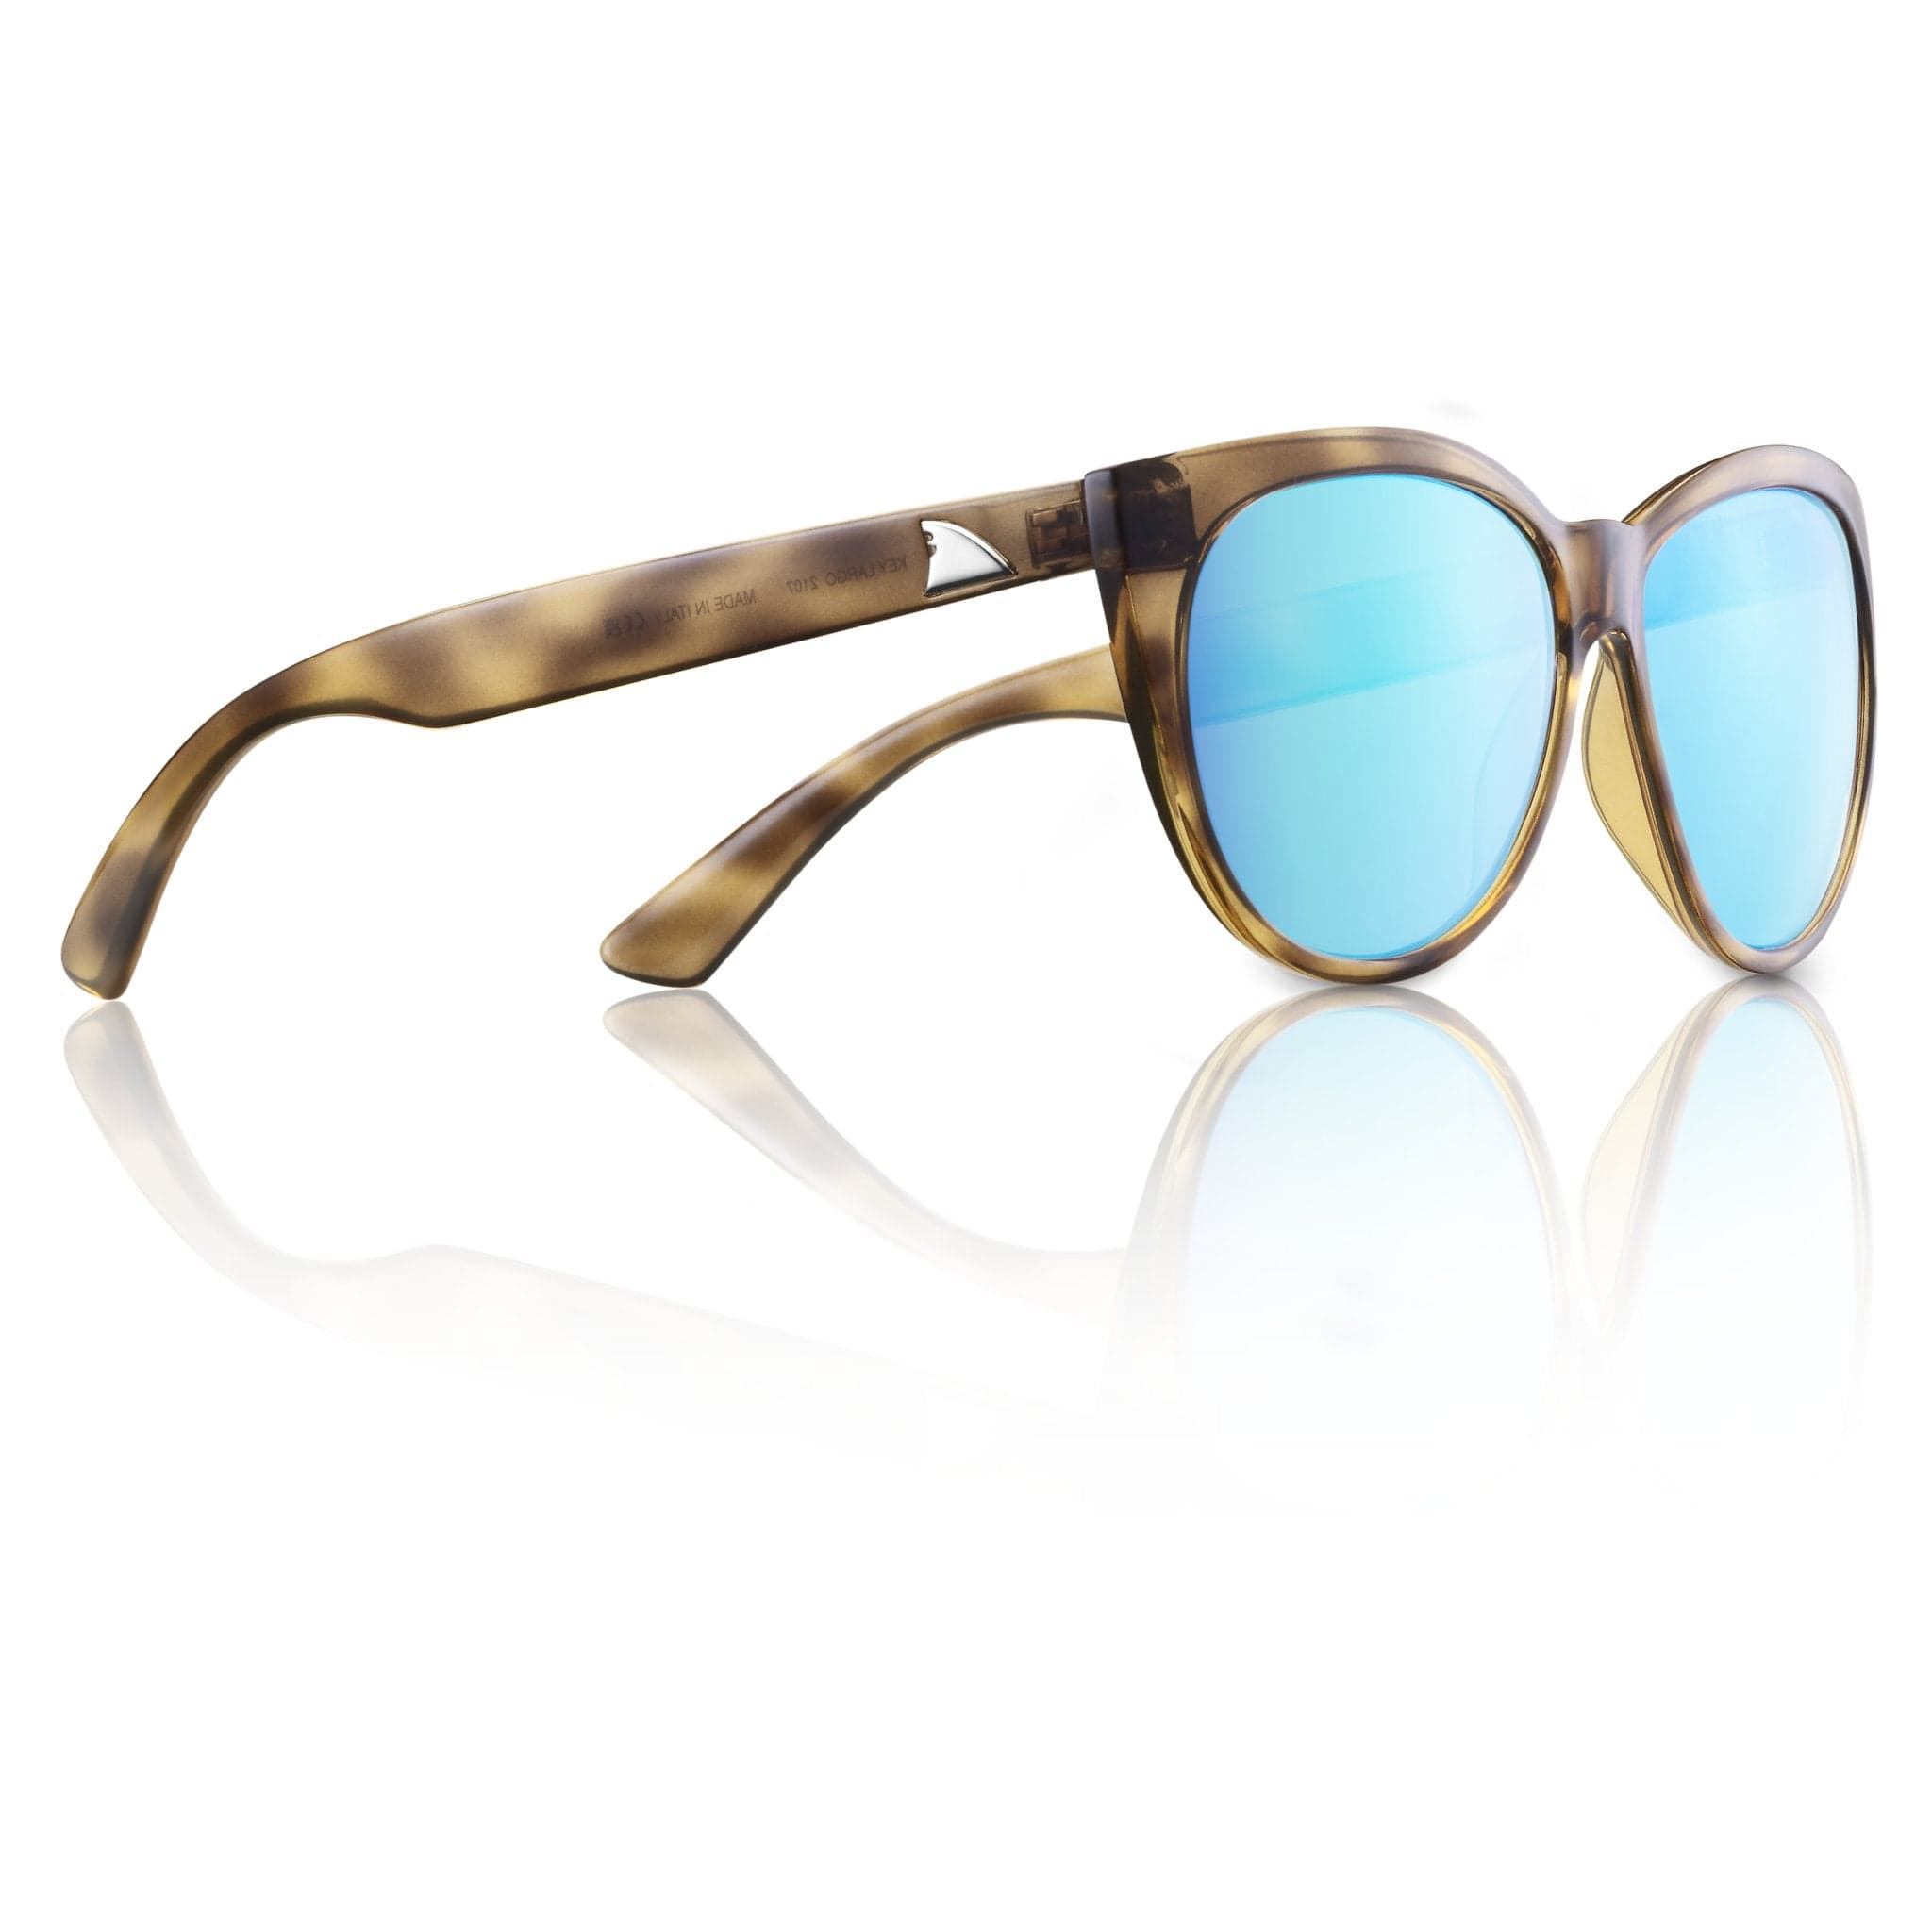 Polarized Fishing Sunglasses - Safety Glasses USA